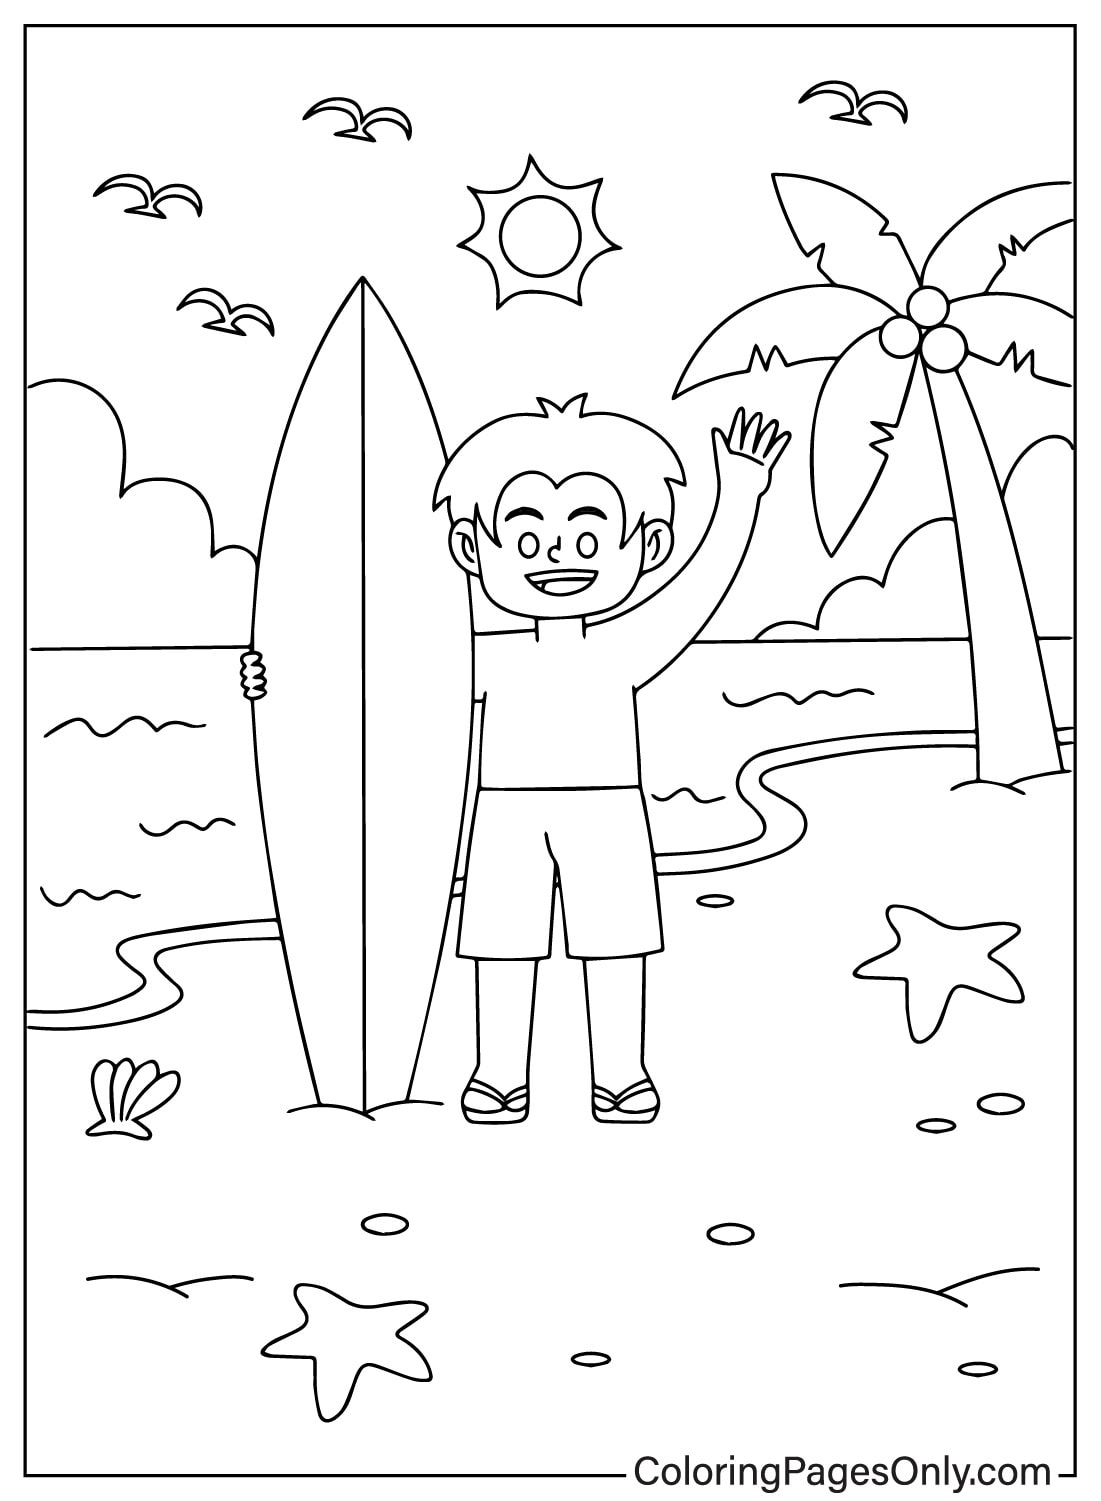 Niño pequeño sosteniendo tabla de surf